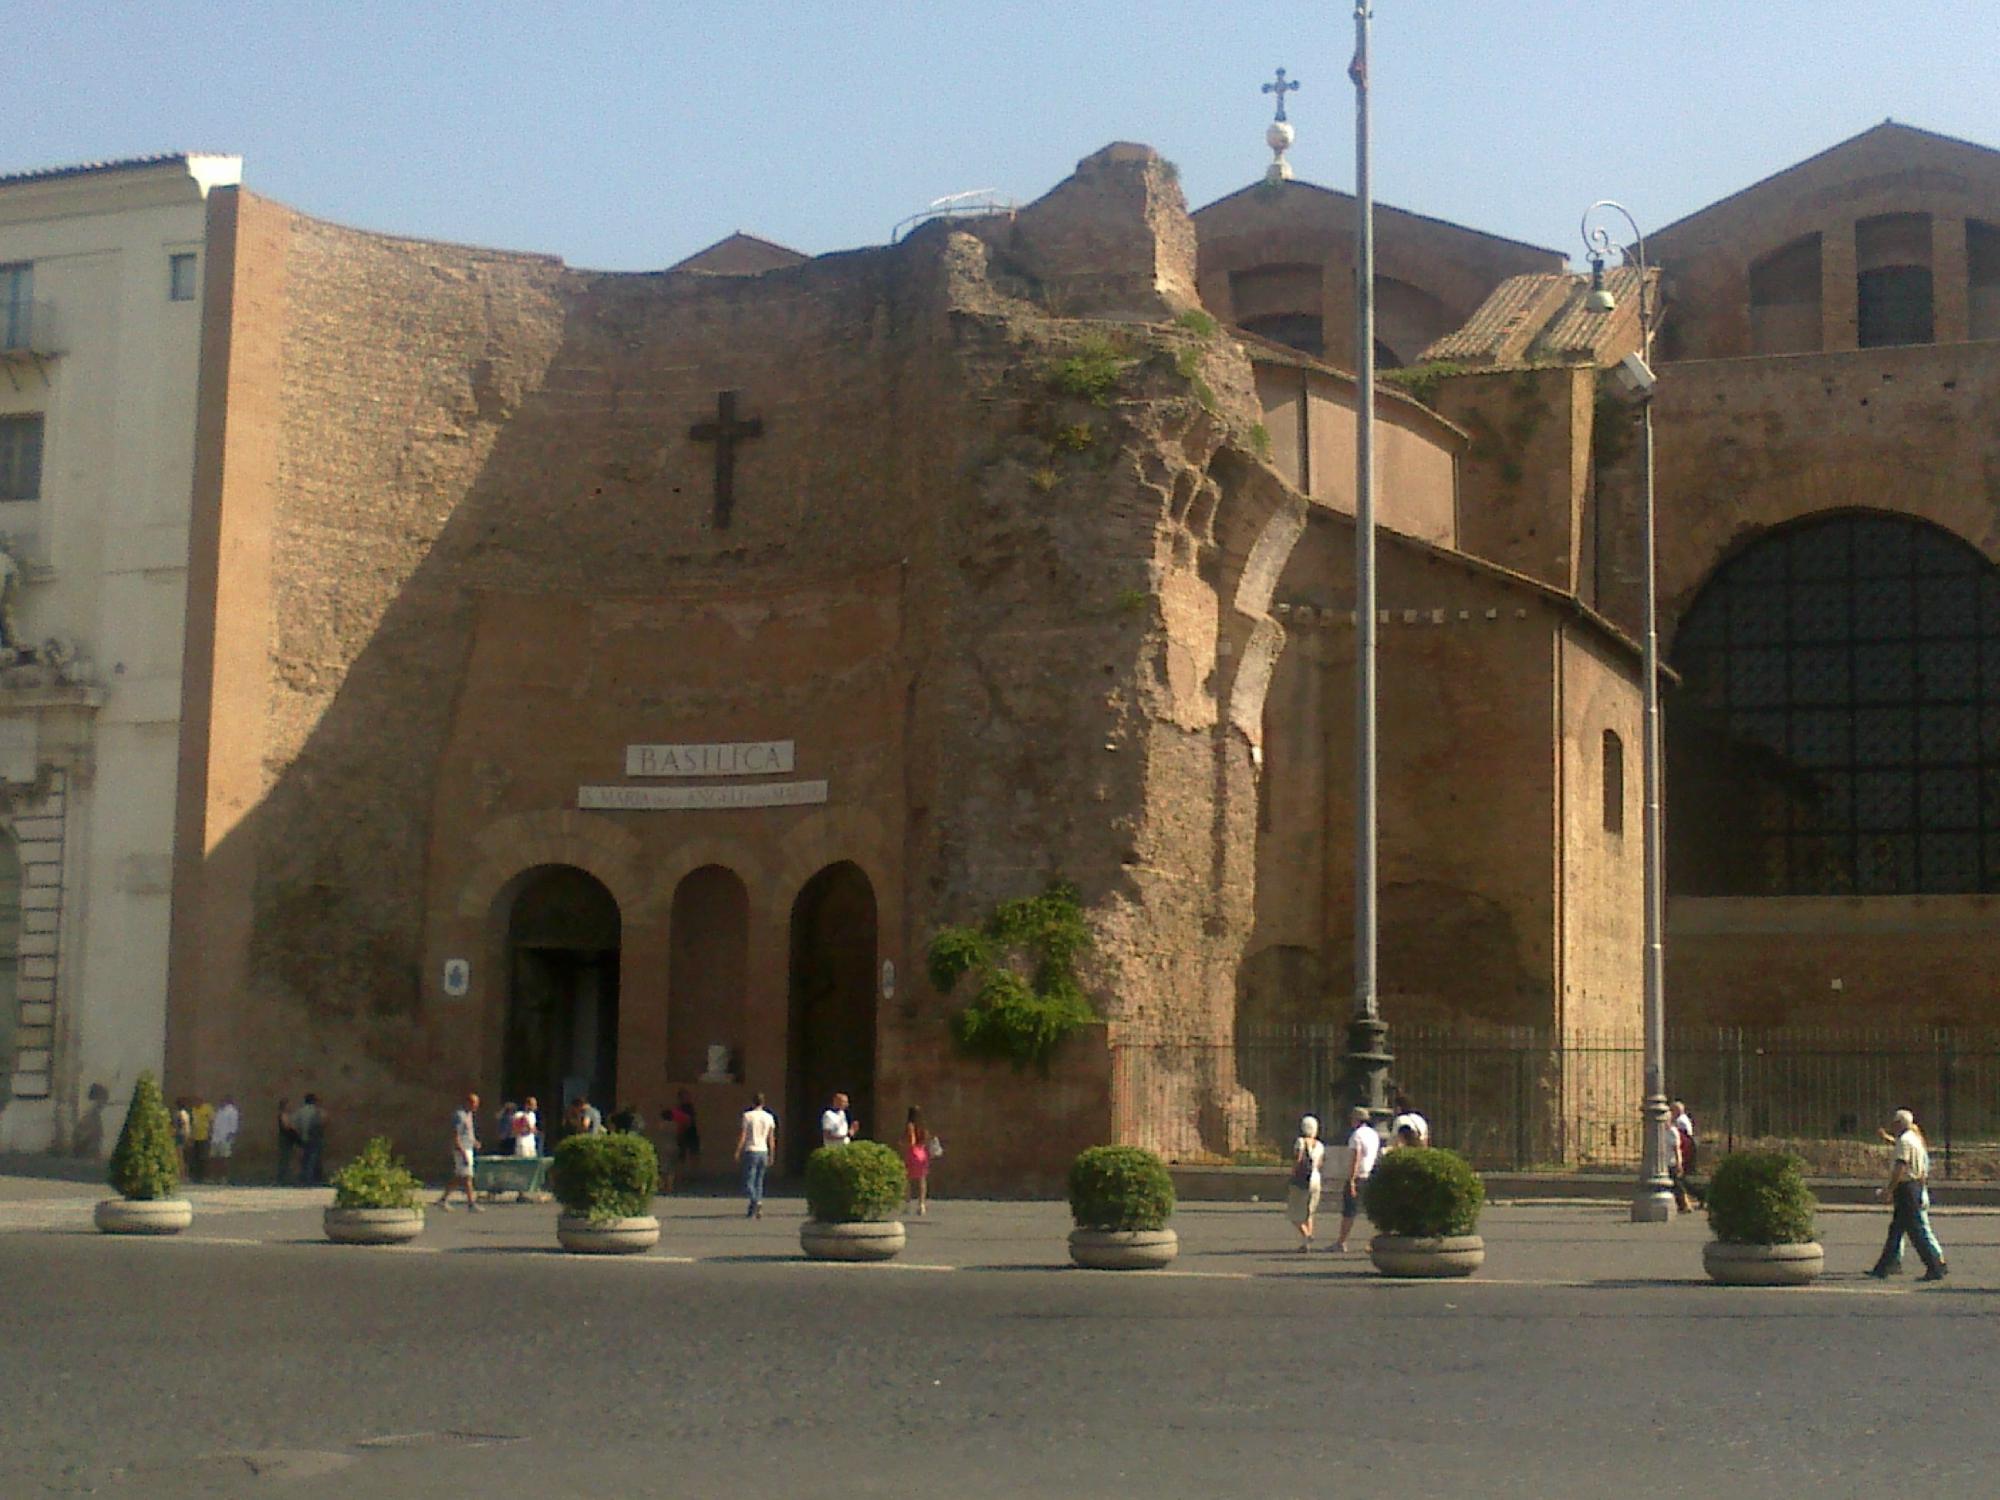 Basilica S.Maria degli Angeli e dei Martiri